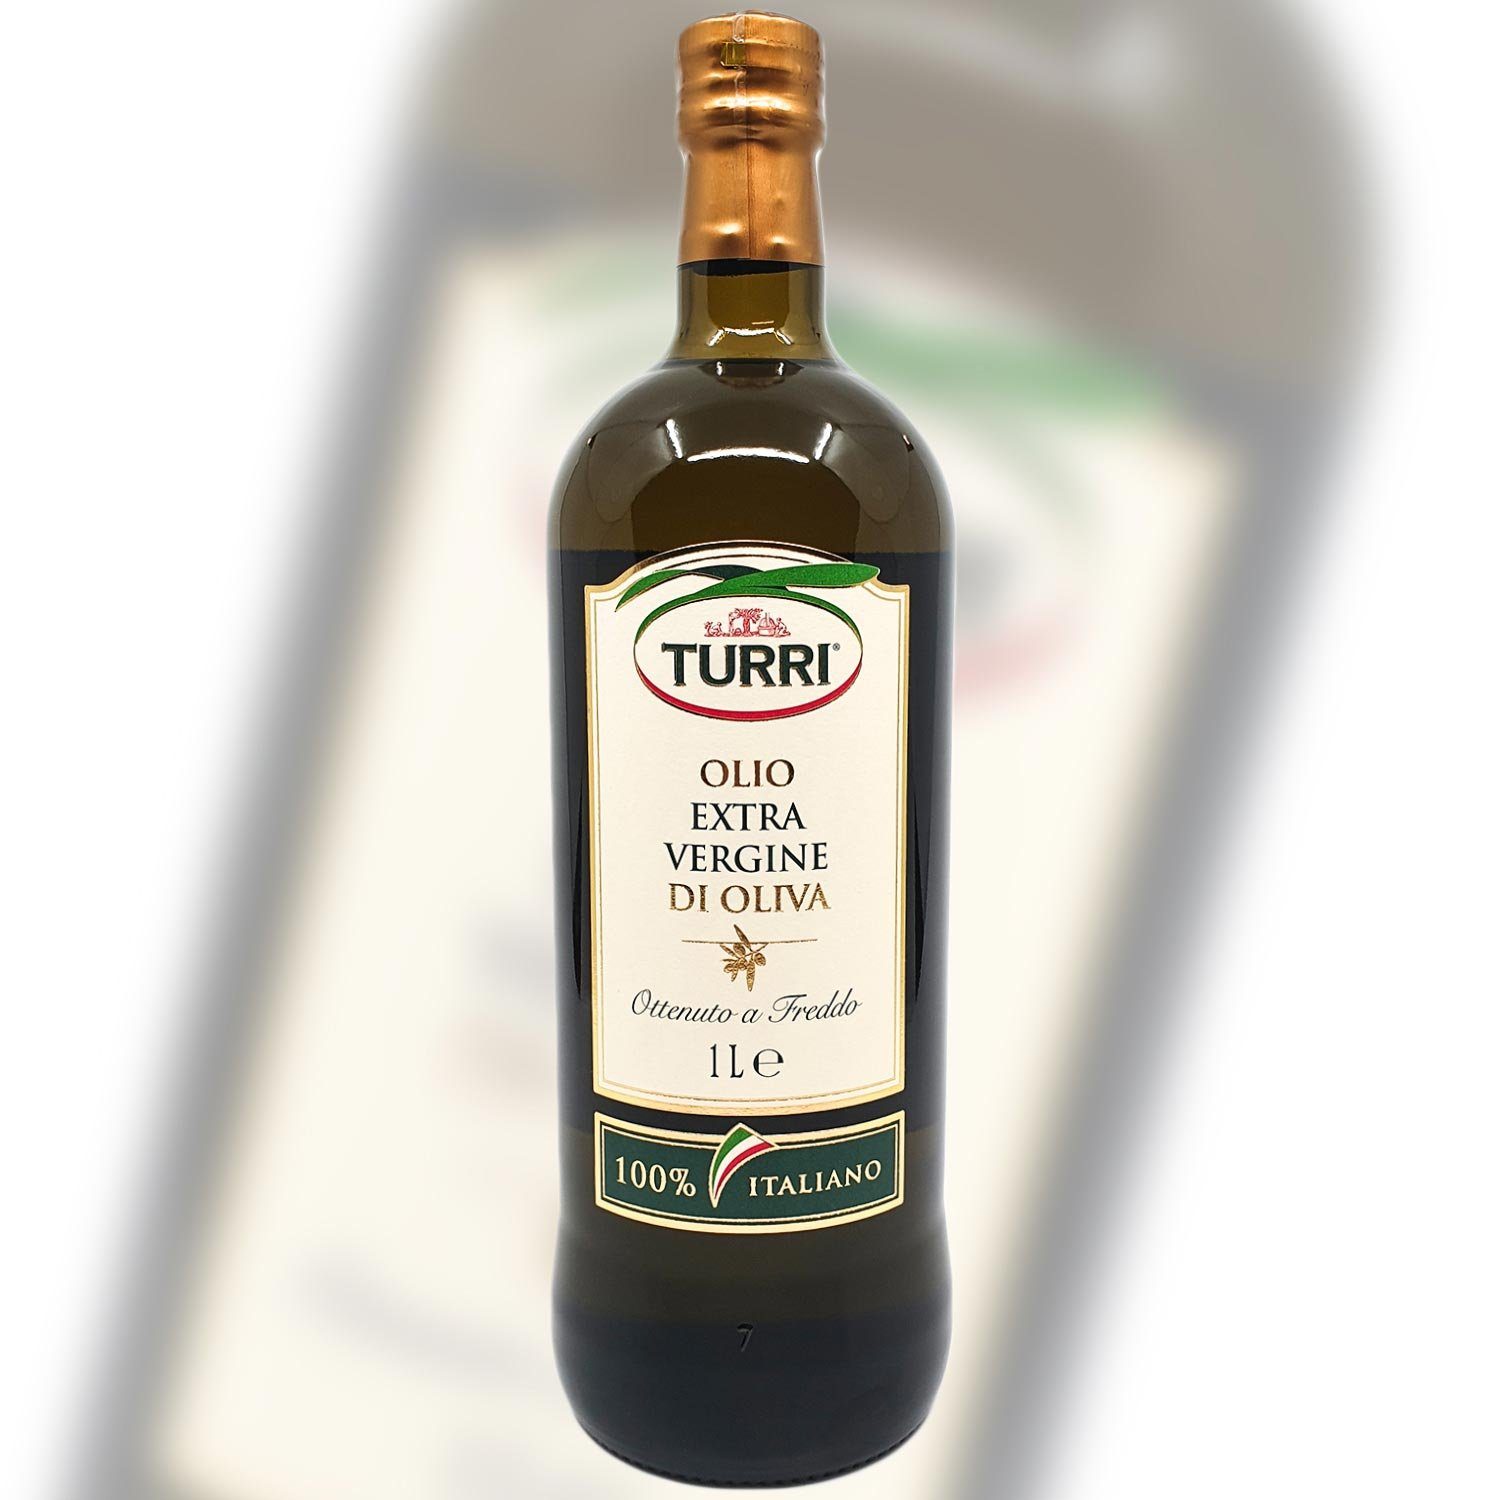 Landshop24 Gewürzregal Turri Olivenöl MHD: 1 Italien, Liter, 1-tlg., 24-01-2025 Speiseöl Italien vergine, 100% Original Gardasee extra